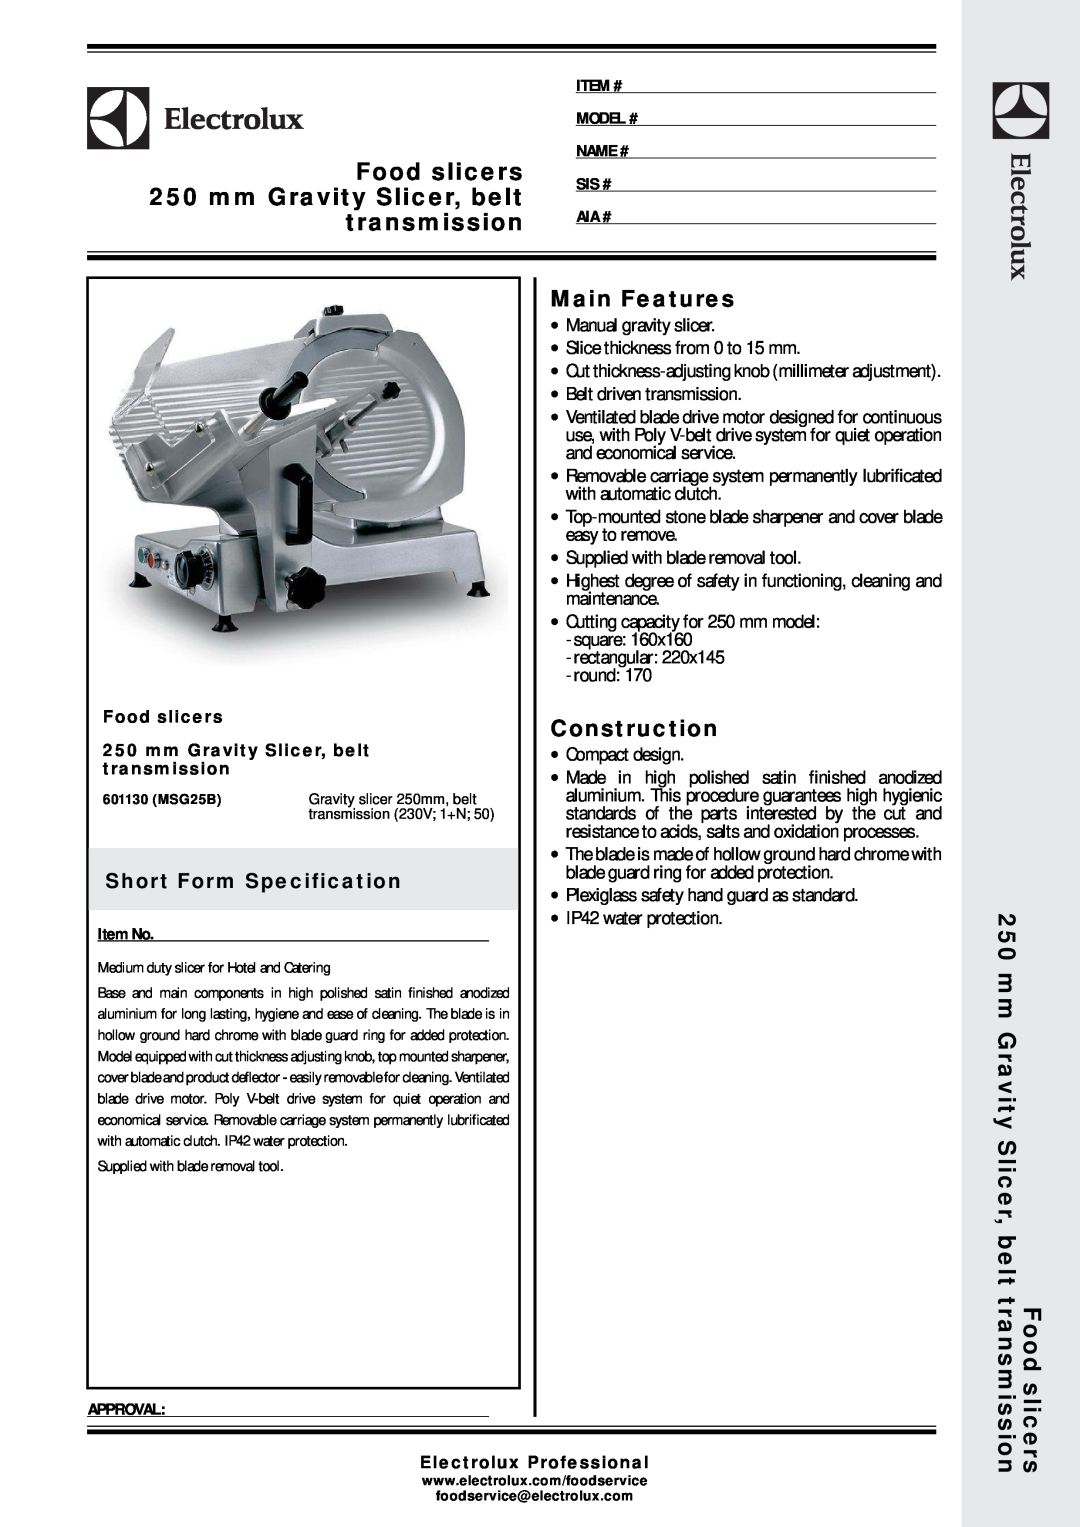 Electrolux 601130 (MSG25B) manual Food slicers, mm Gravity Slicer, belt, transmission, Electrolux Professional 